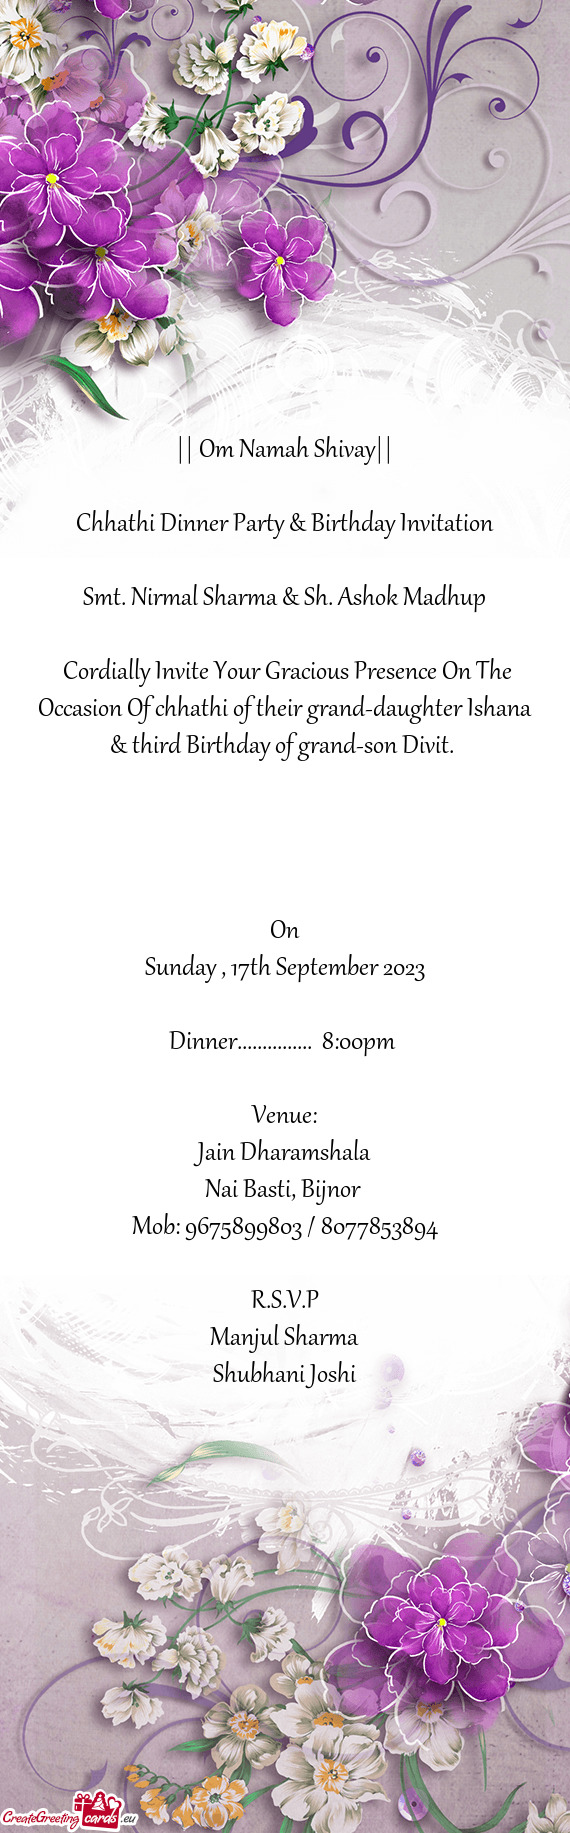 Chhathi Dinner Party & Birthday Invitation